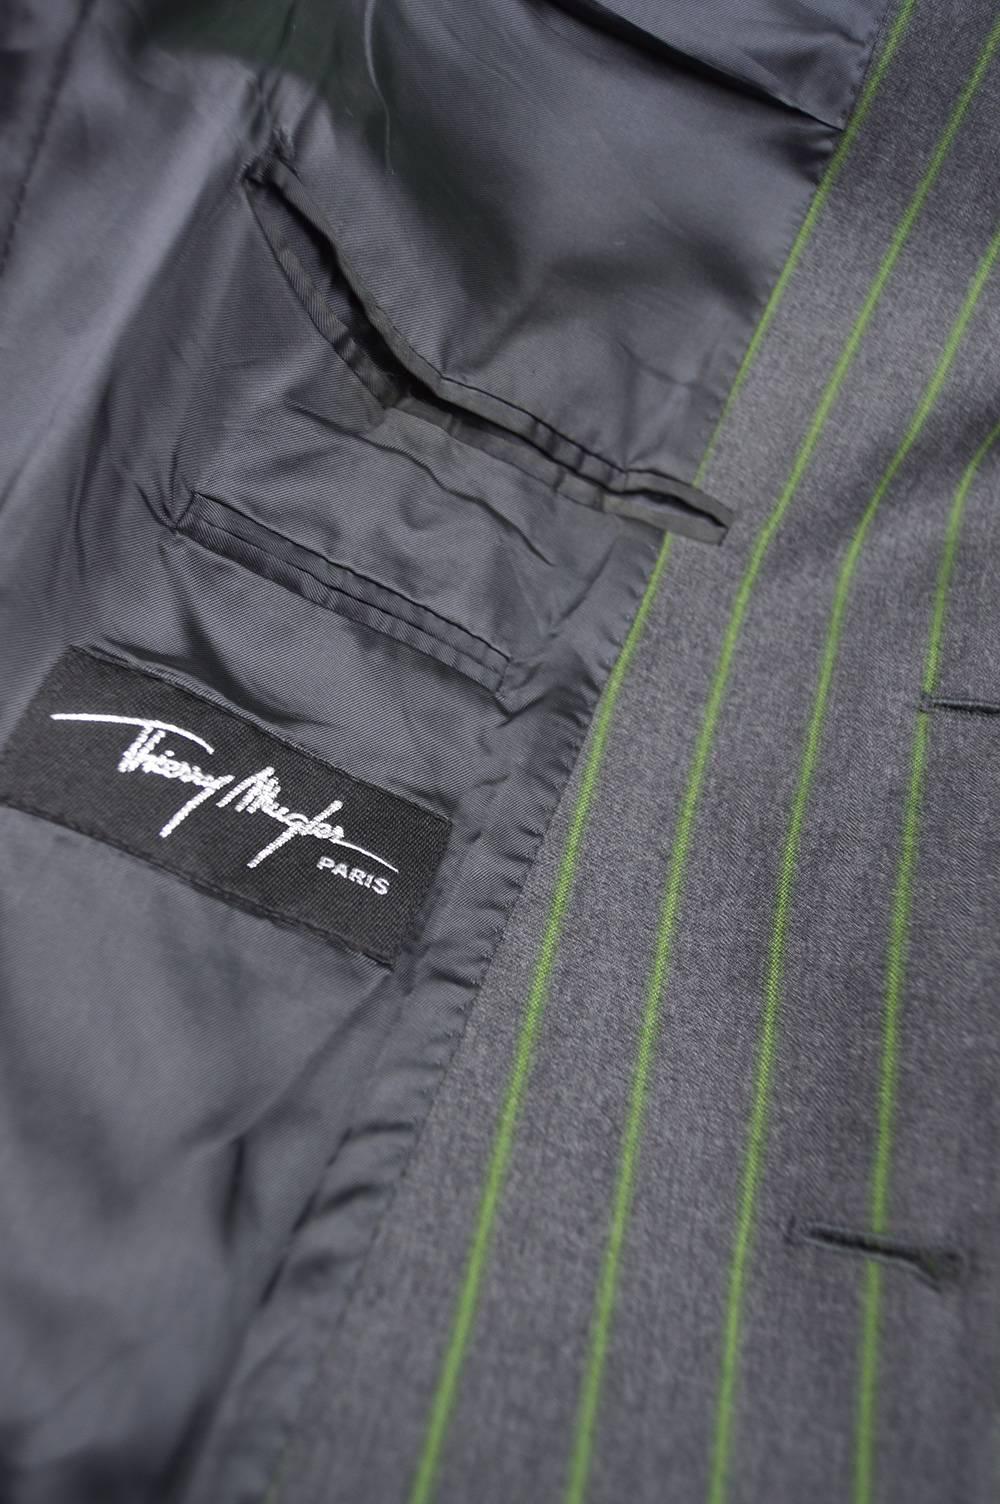 Thierry Mugler Men's Grey & Green Pinstripe Wool Blazer& Pants Suit 2